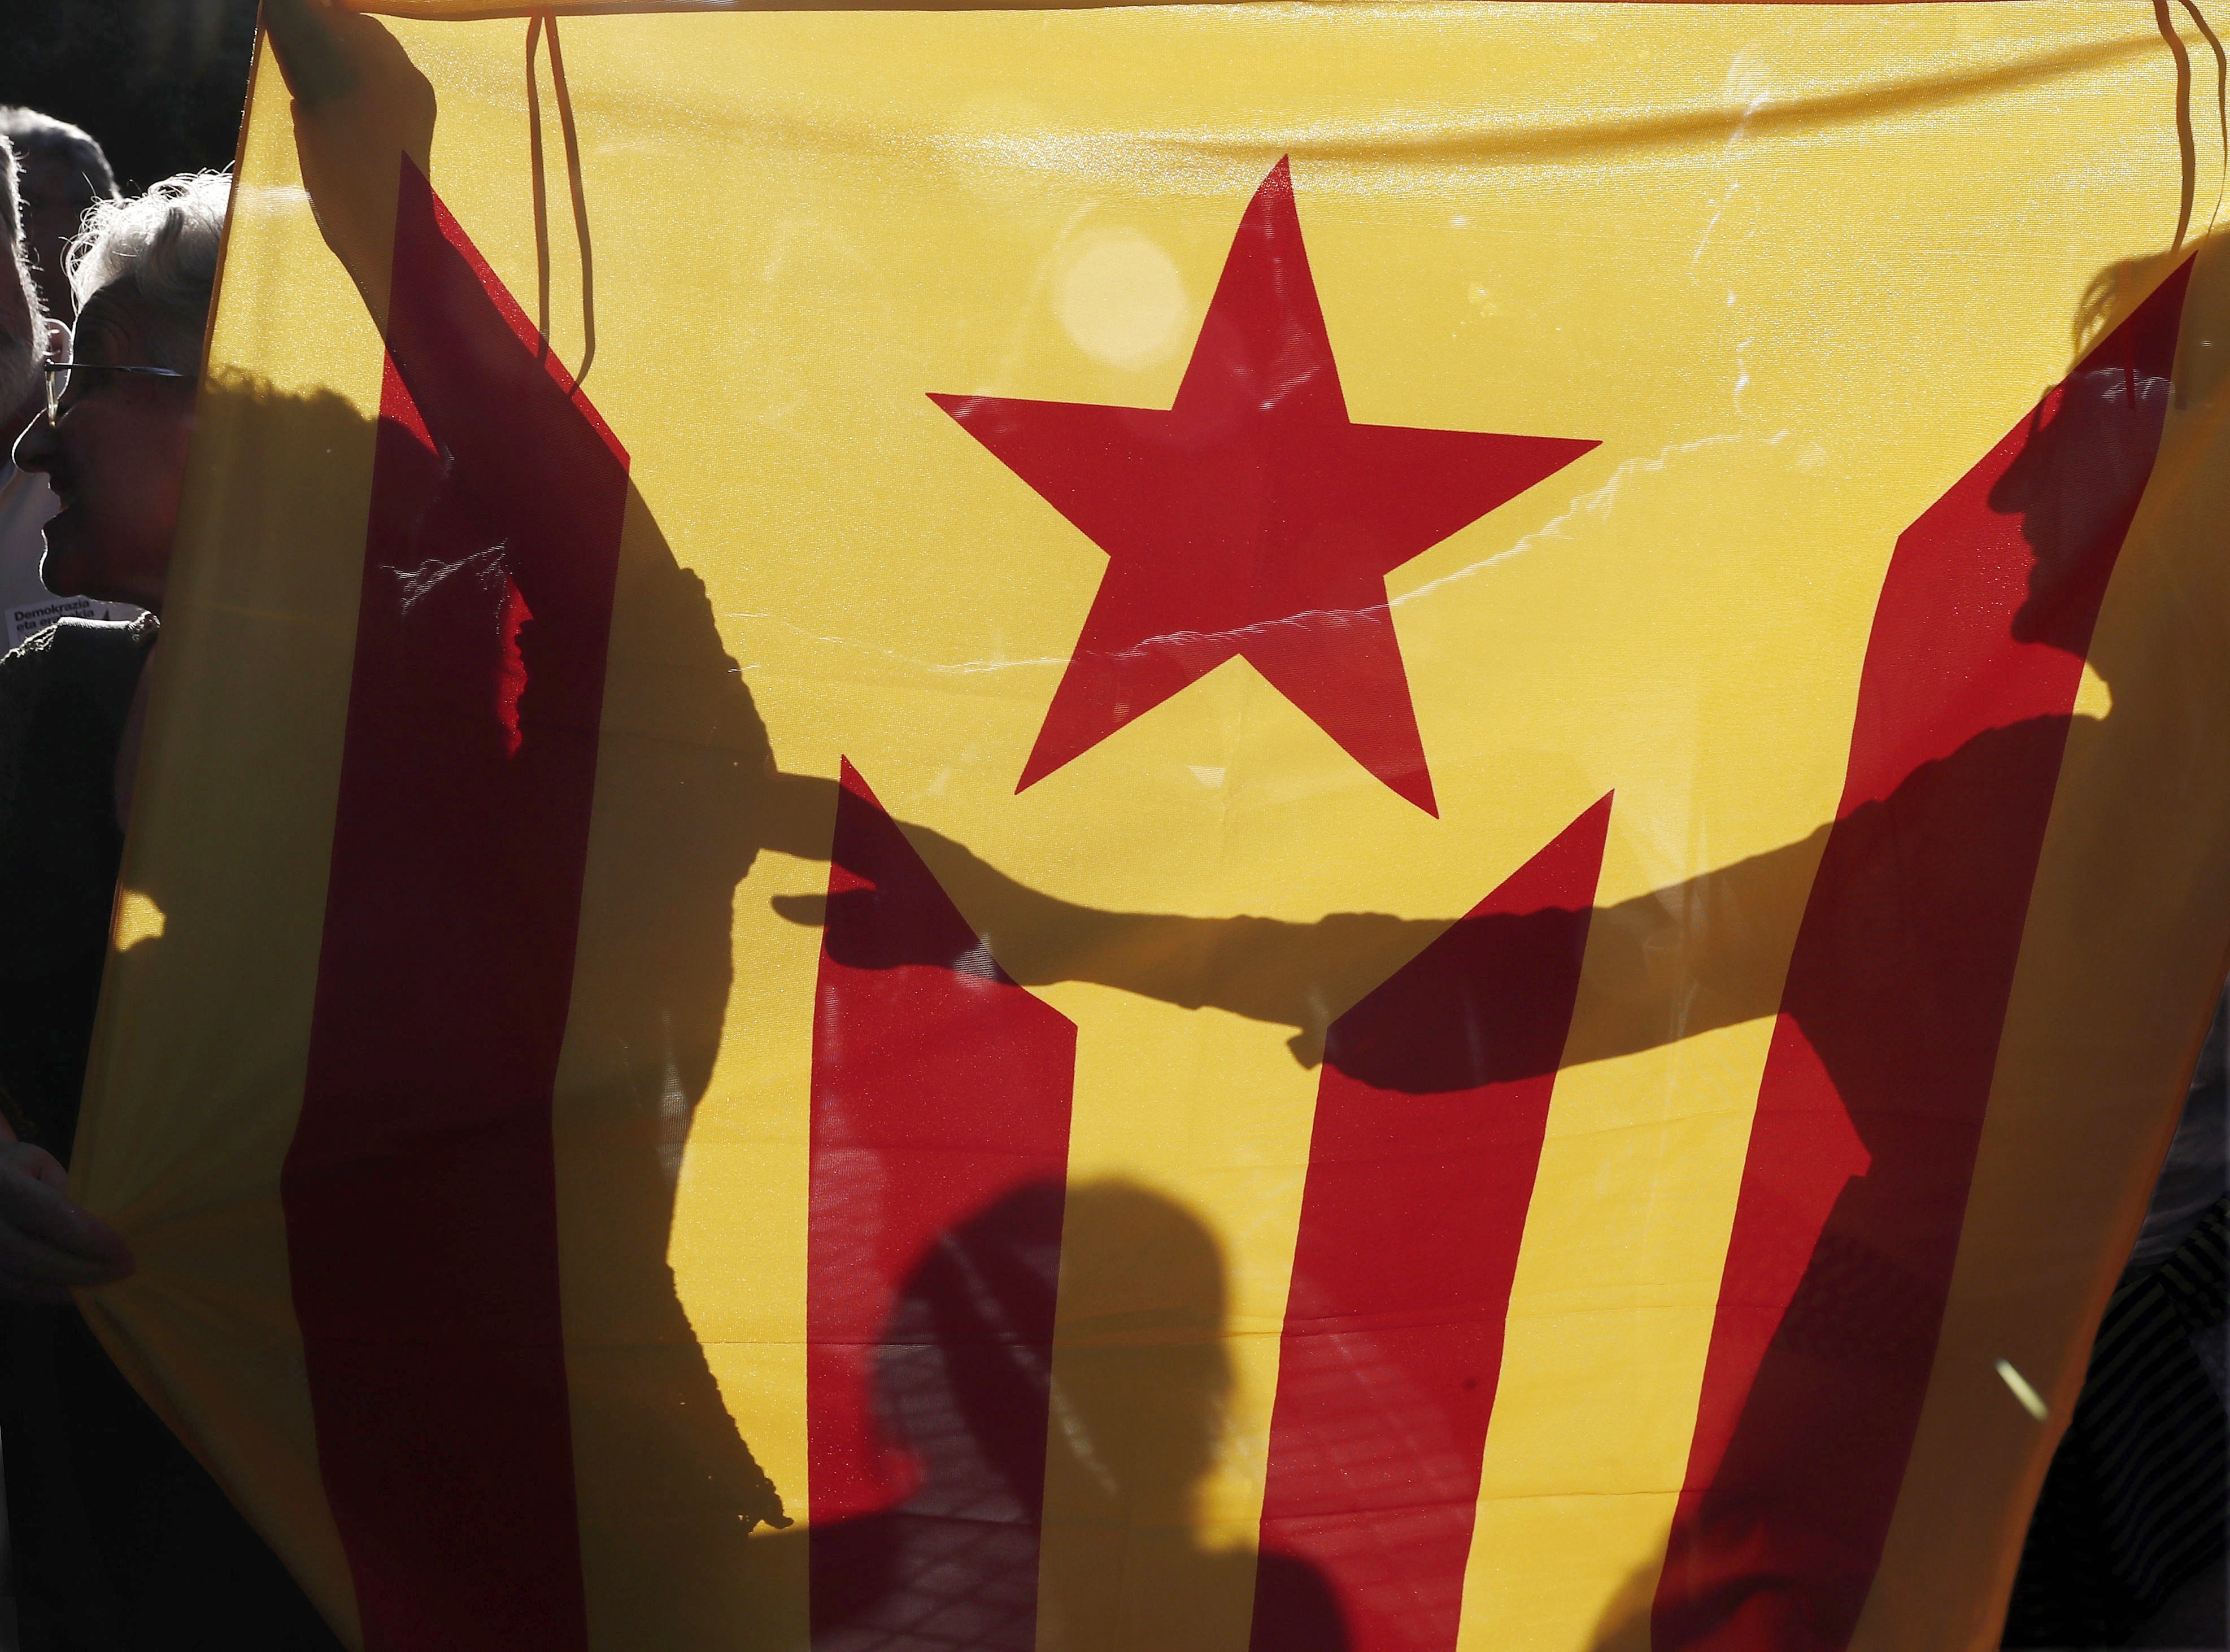 Ανάλυση του Αγγελου Συρίγου για την Καταλονία και τα αποσχιστικά κινήματα